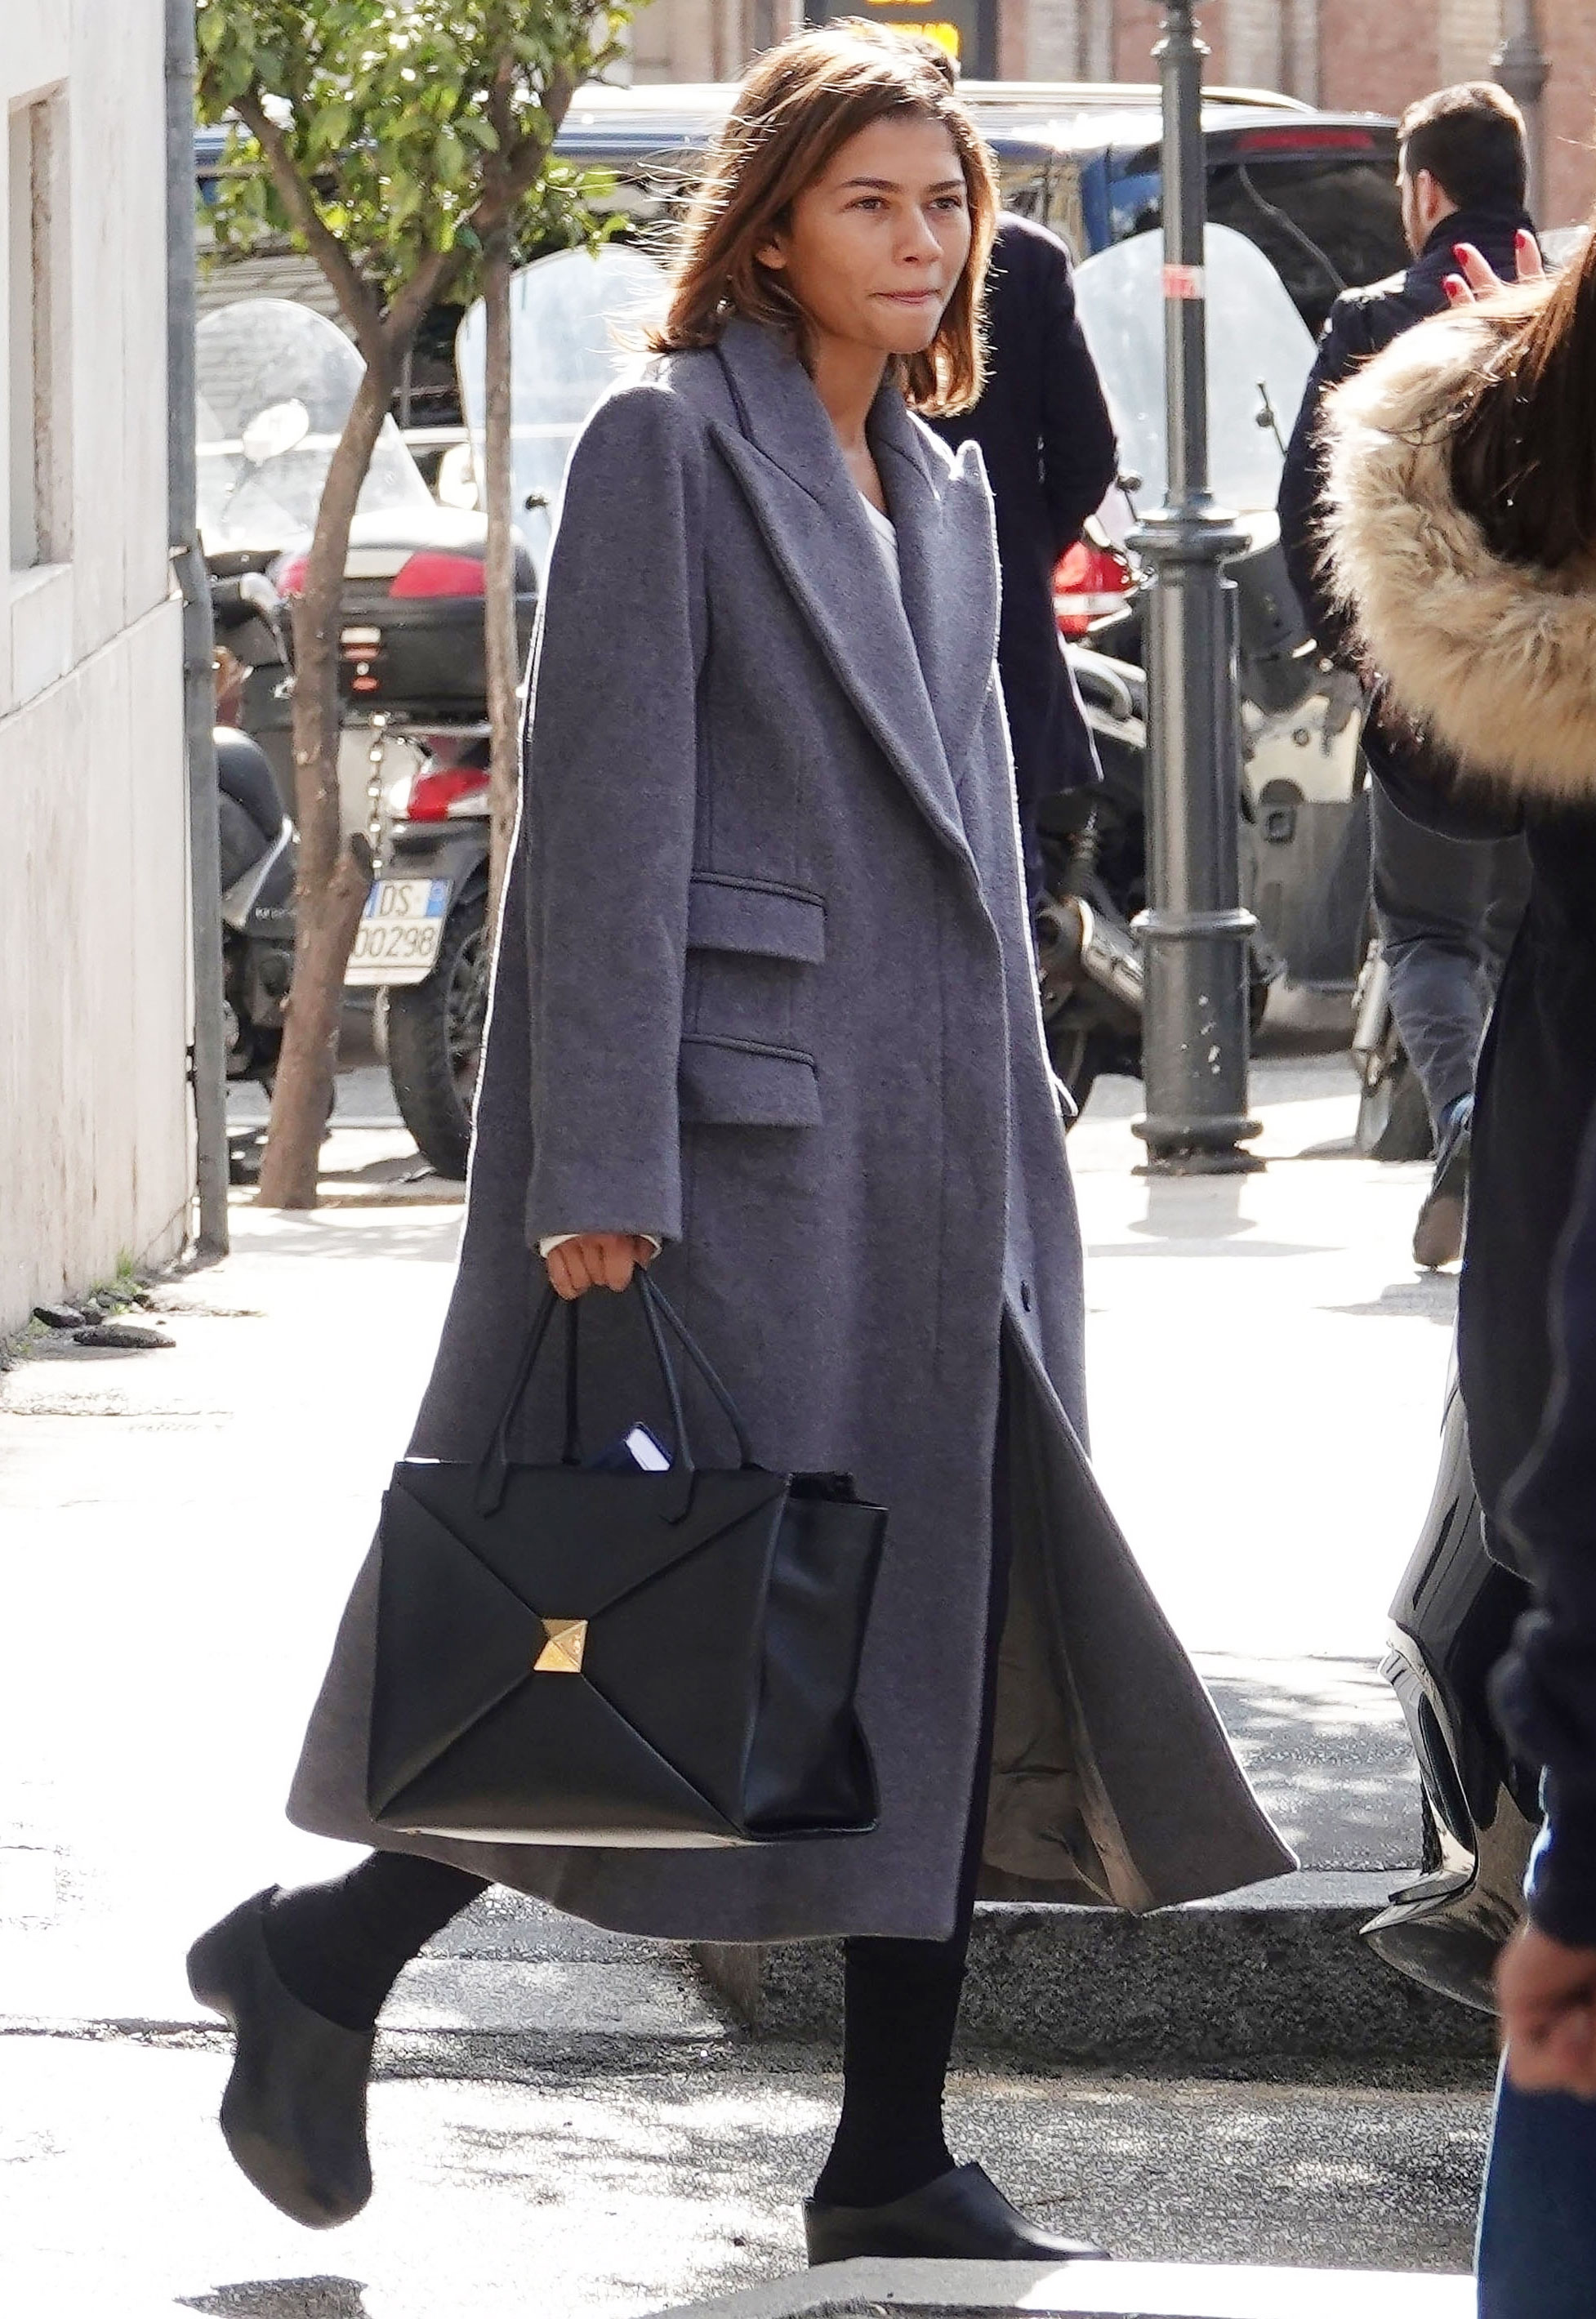 zendaya wearing a valentino tote bag and gray coat